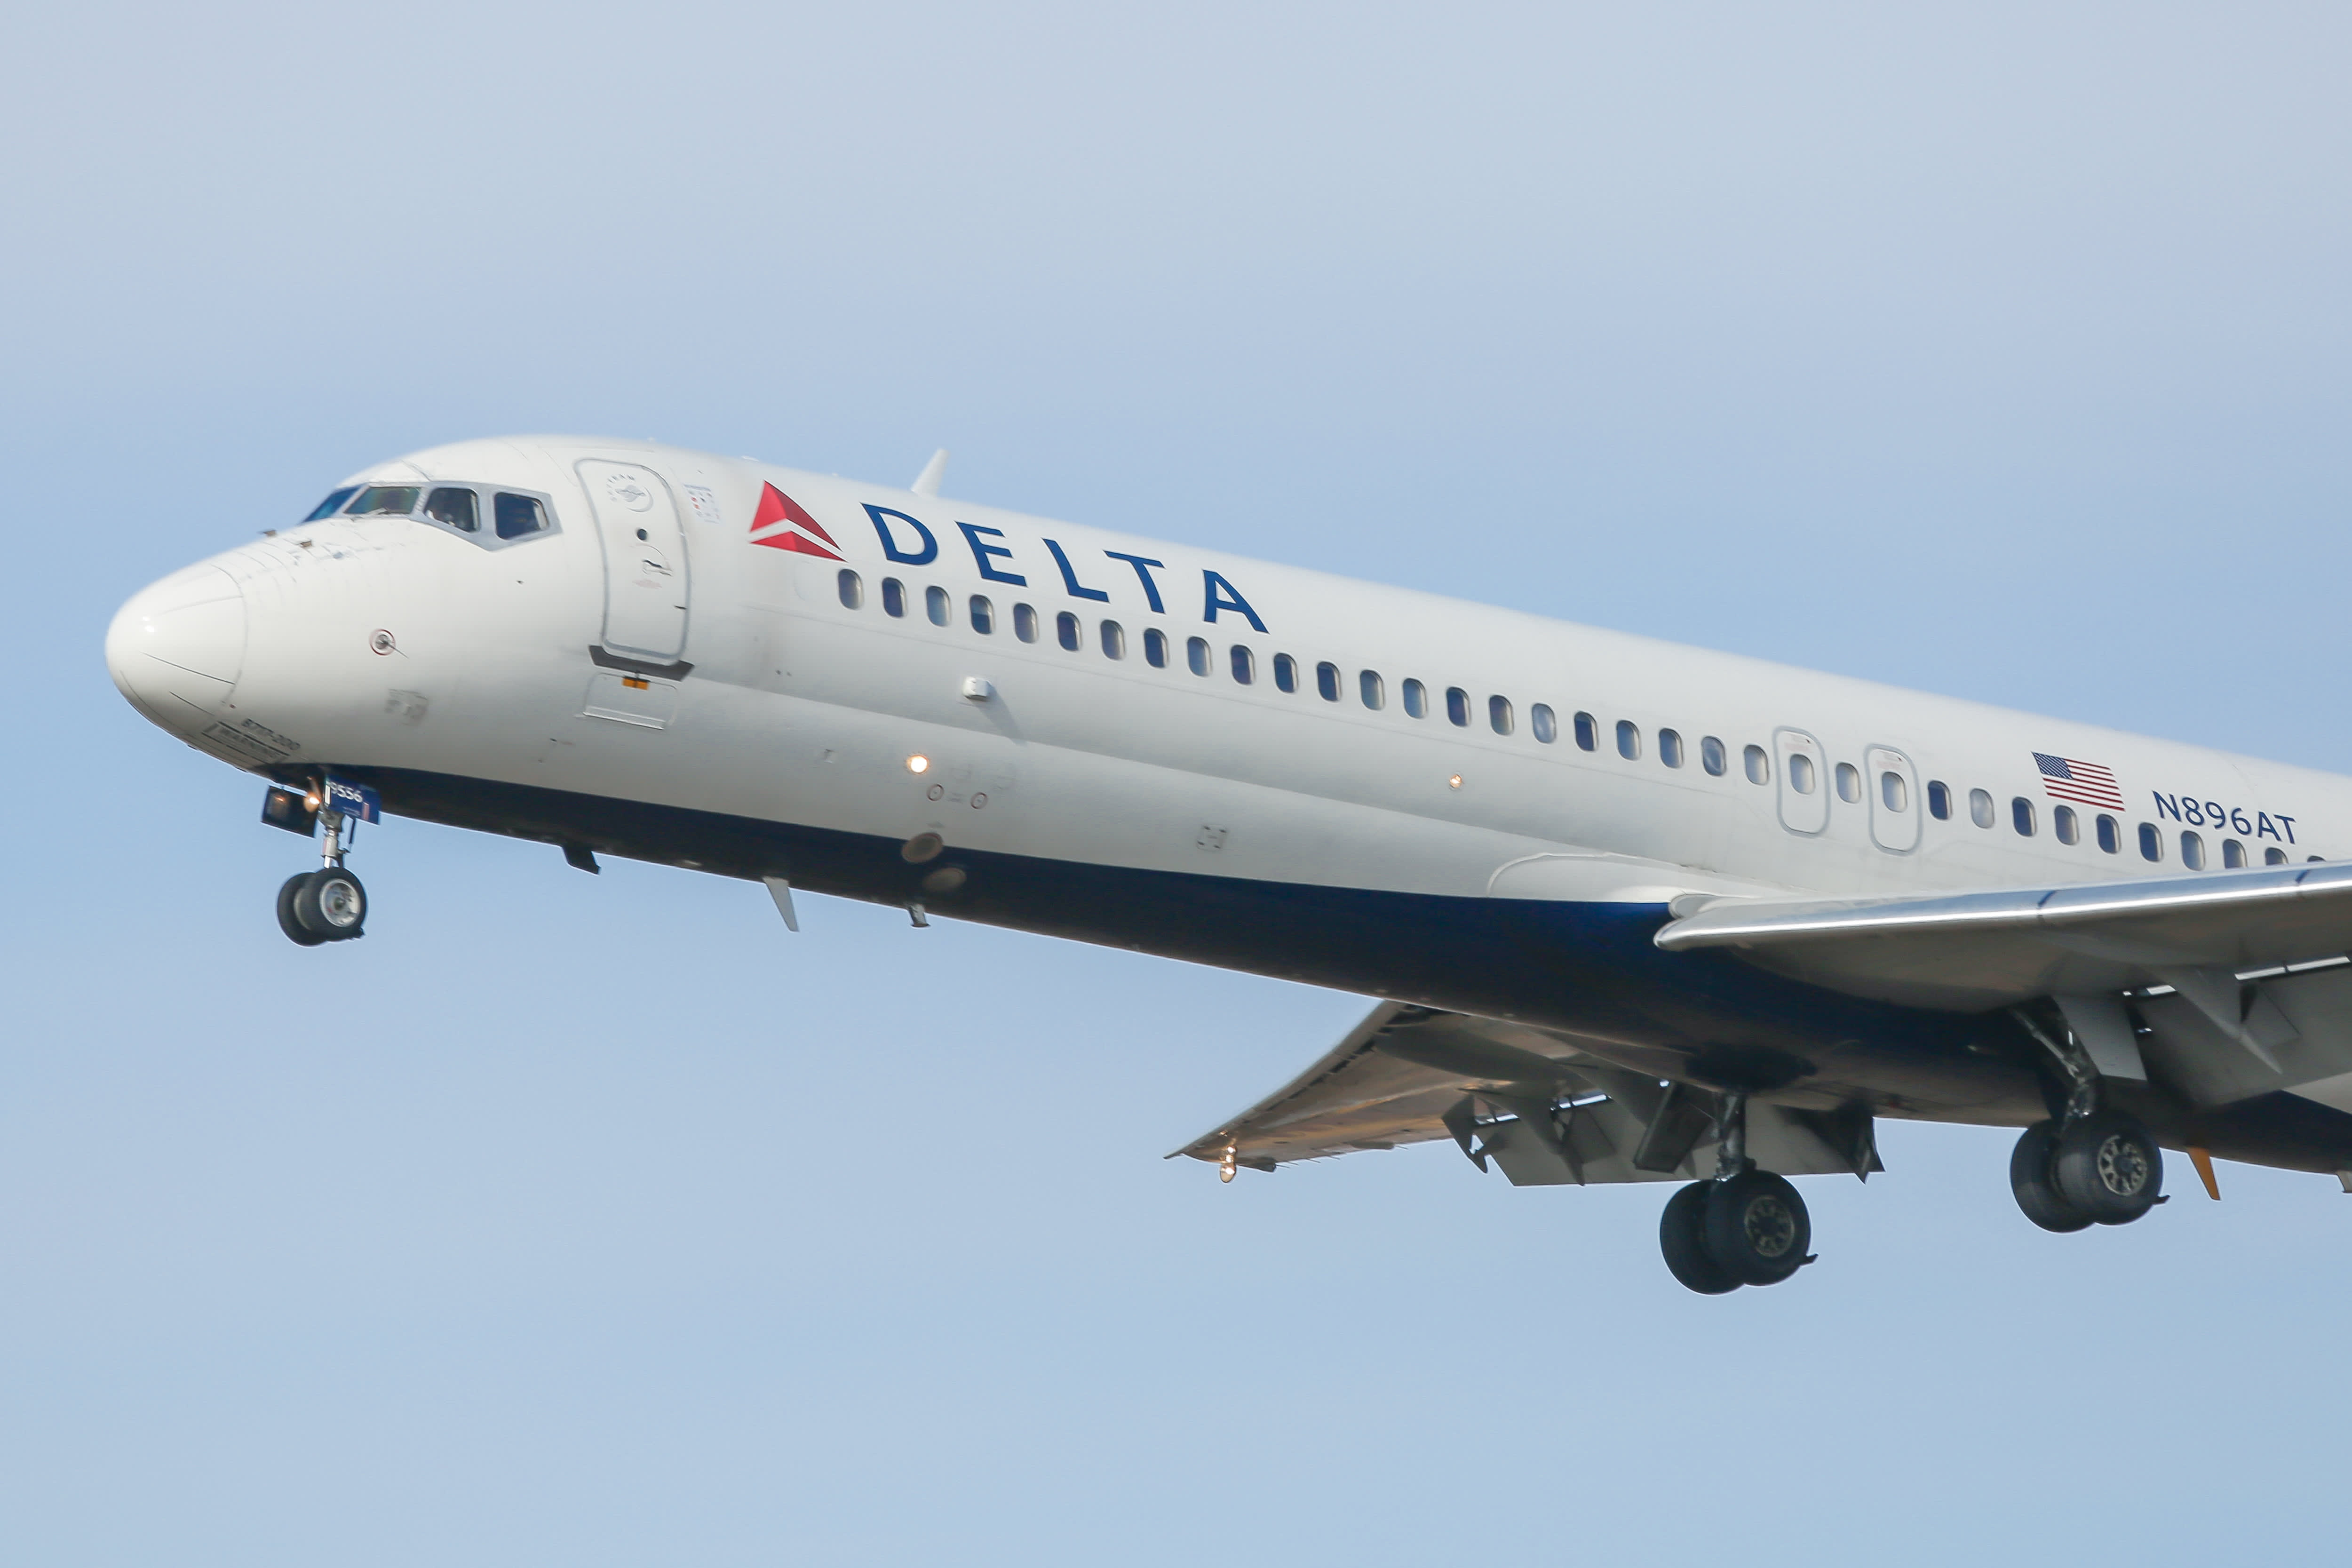 O CEO da Delta diz que a operadora foi “longe demais” com as mudanças no SkyMiles e promete ajustes após reação dos passageiros frequentes